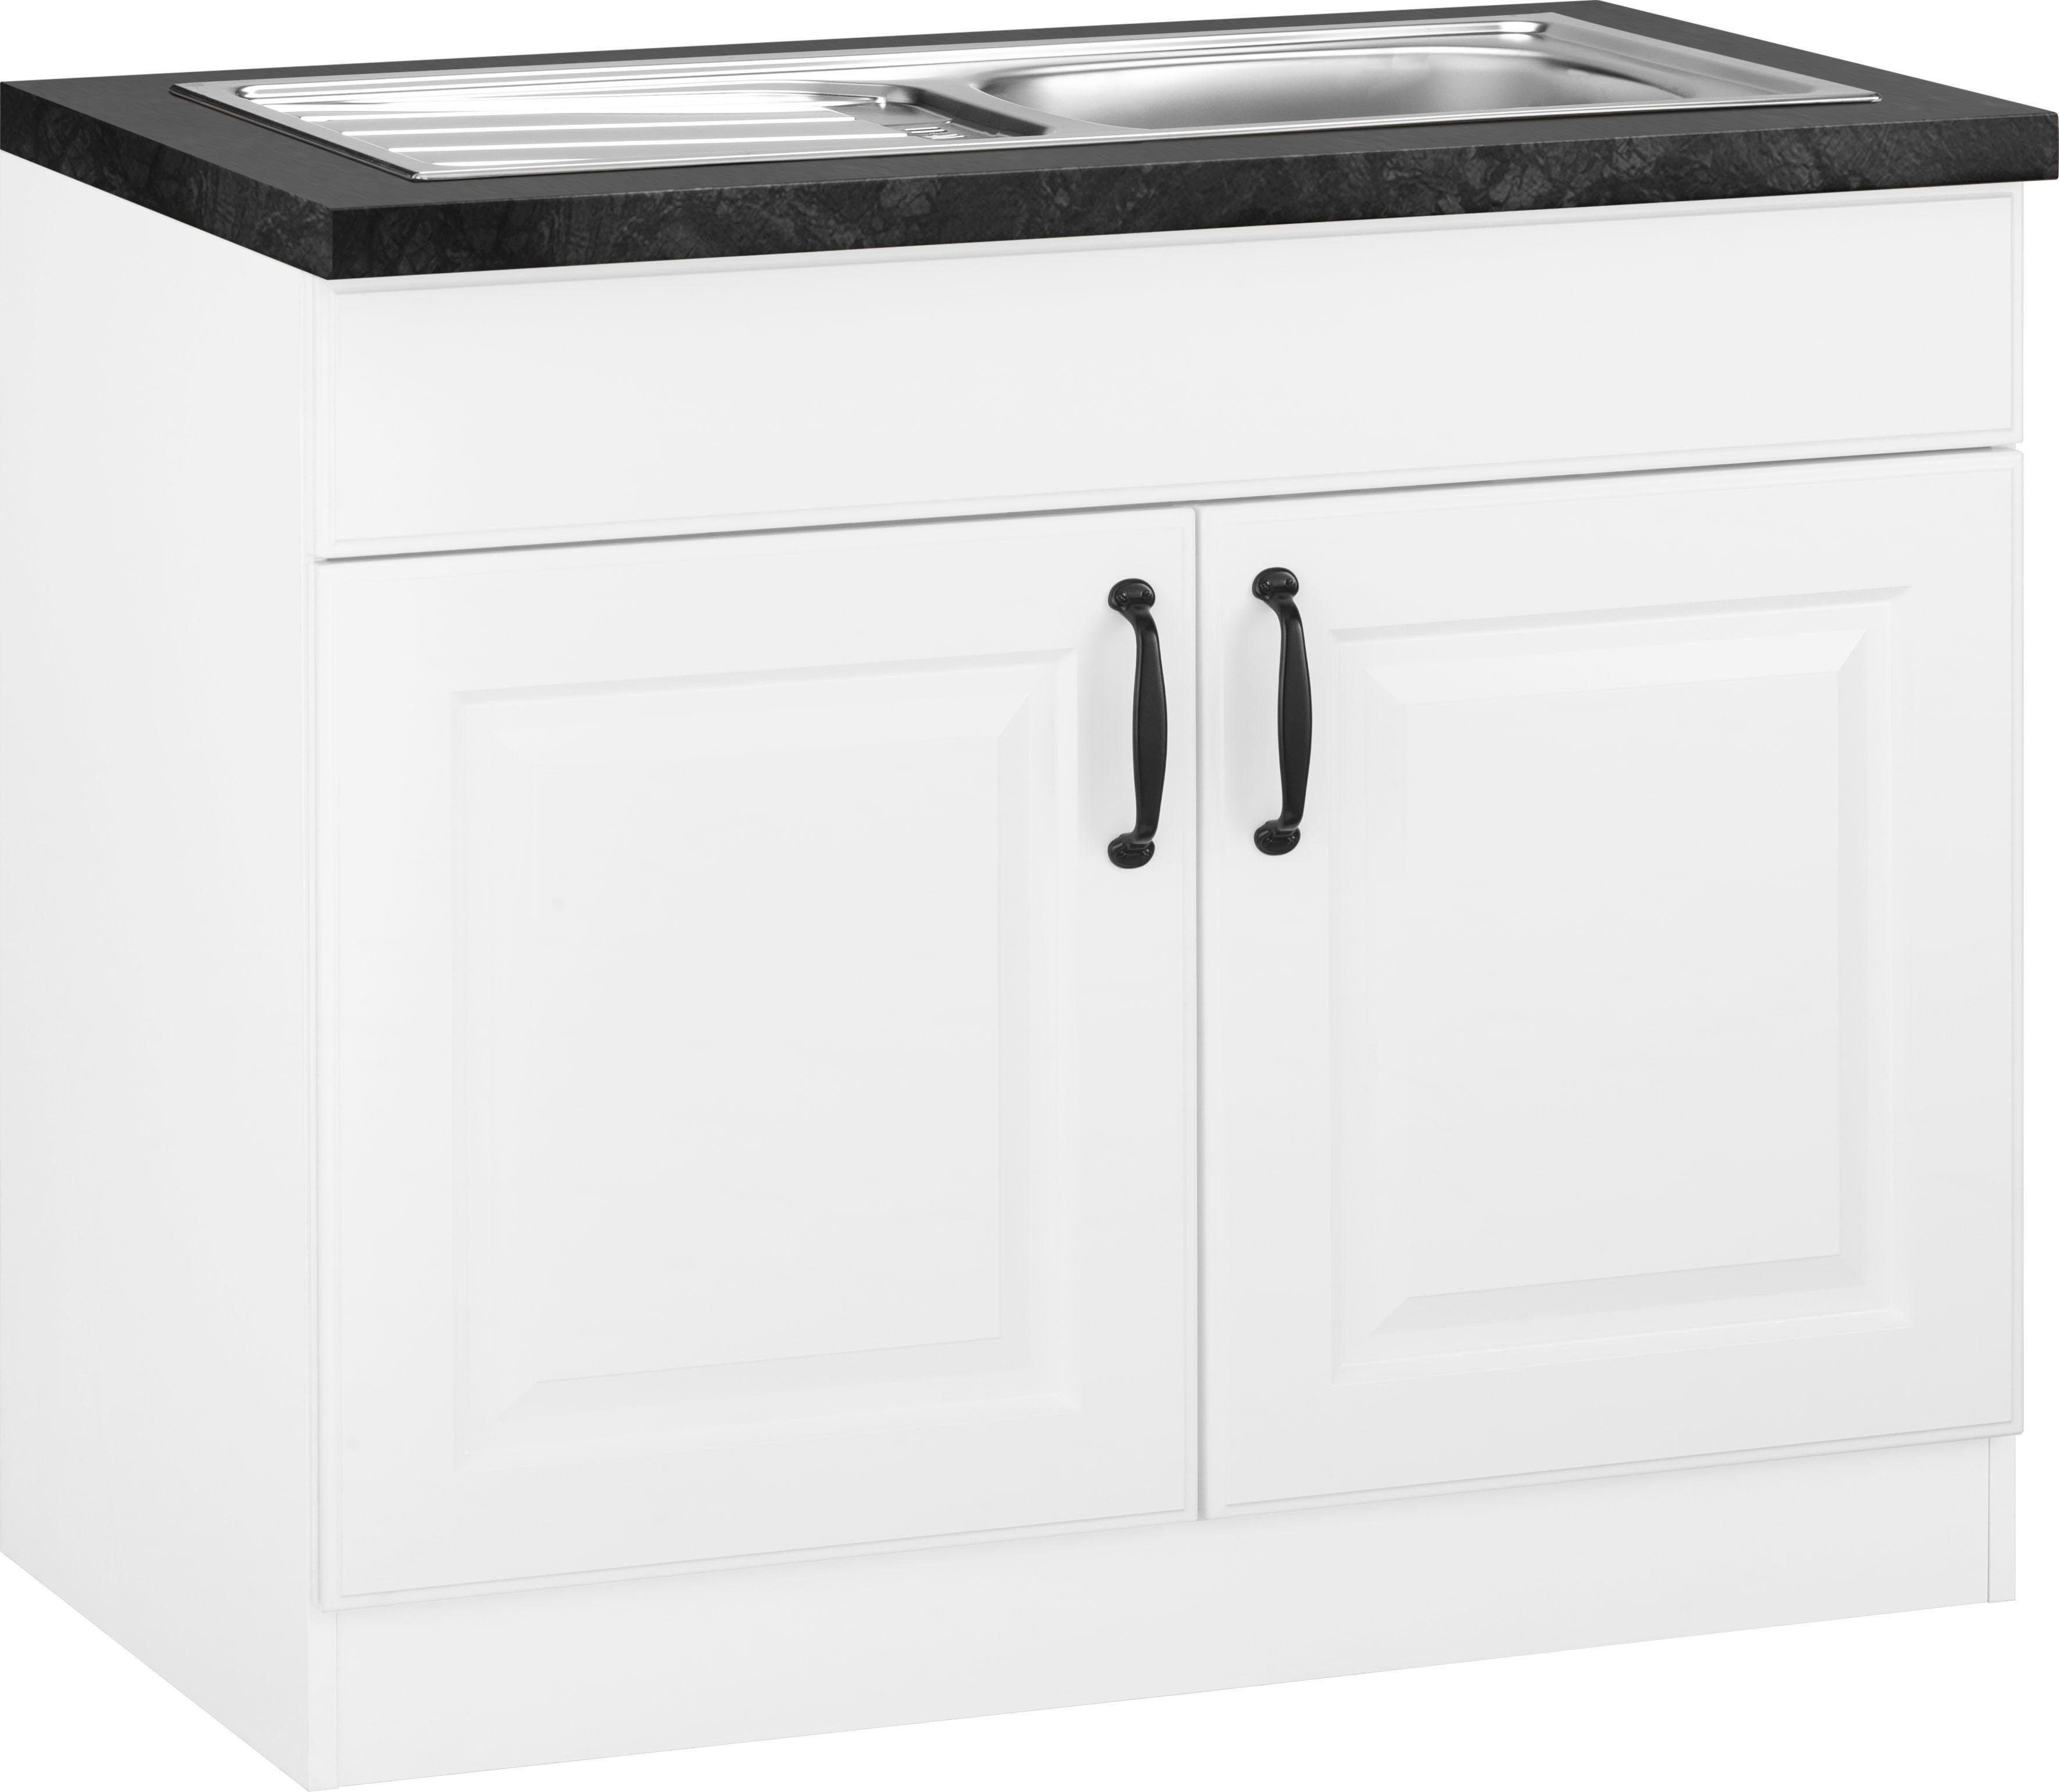 wiho Küchen Spülenschrank Erla 100 cm breit mit Kassettenfront weiß/granit schwarz | weiß